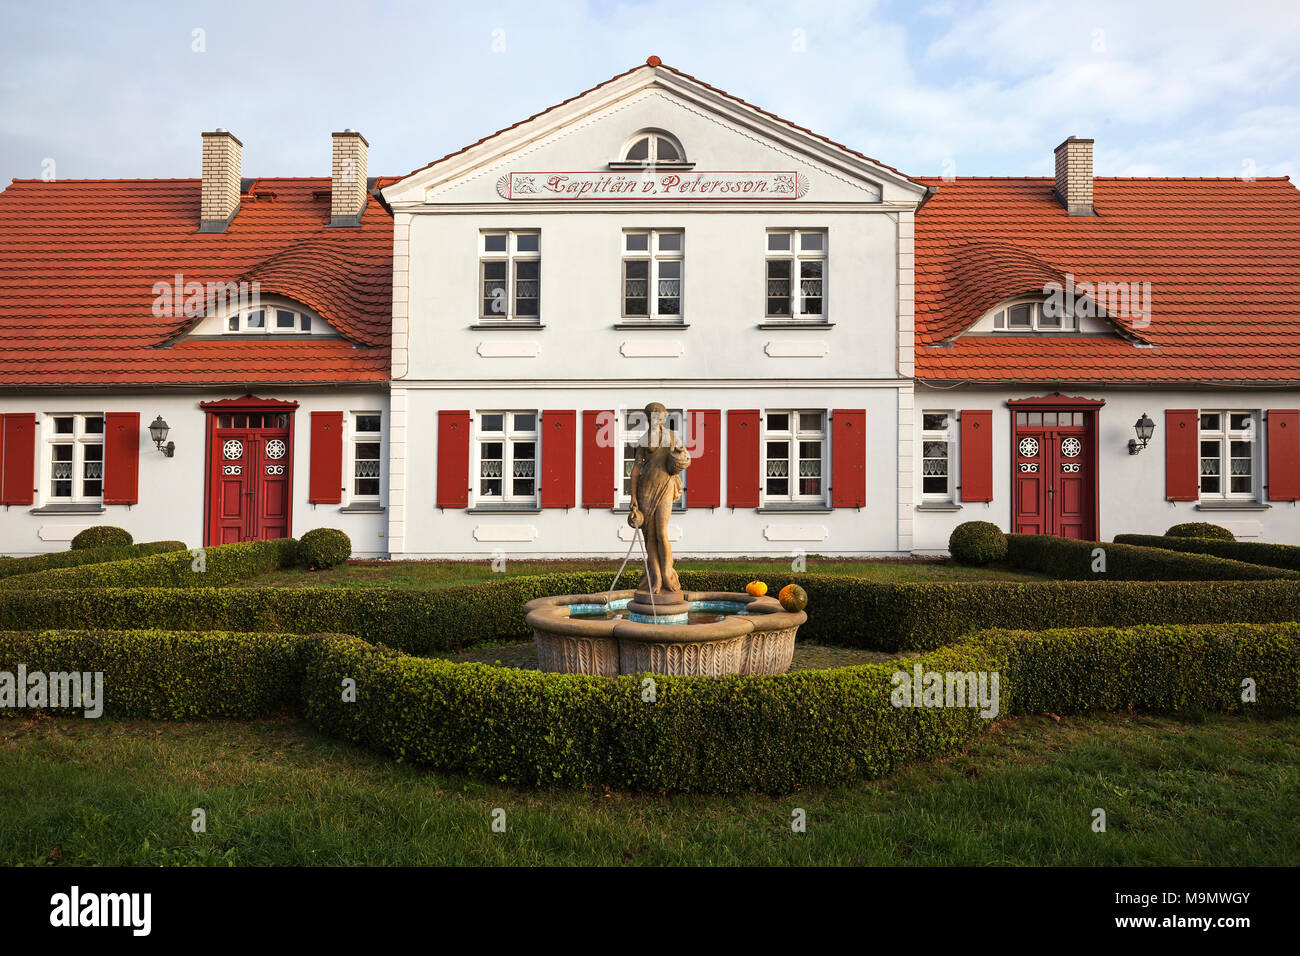 Captain's House, maison du capitaine von Petersson, né am Darß, Fischland-darss-Zingst, Mecklembourg-Poméranie-Occidentale, Allemagne Banque D'Images